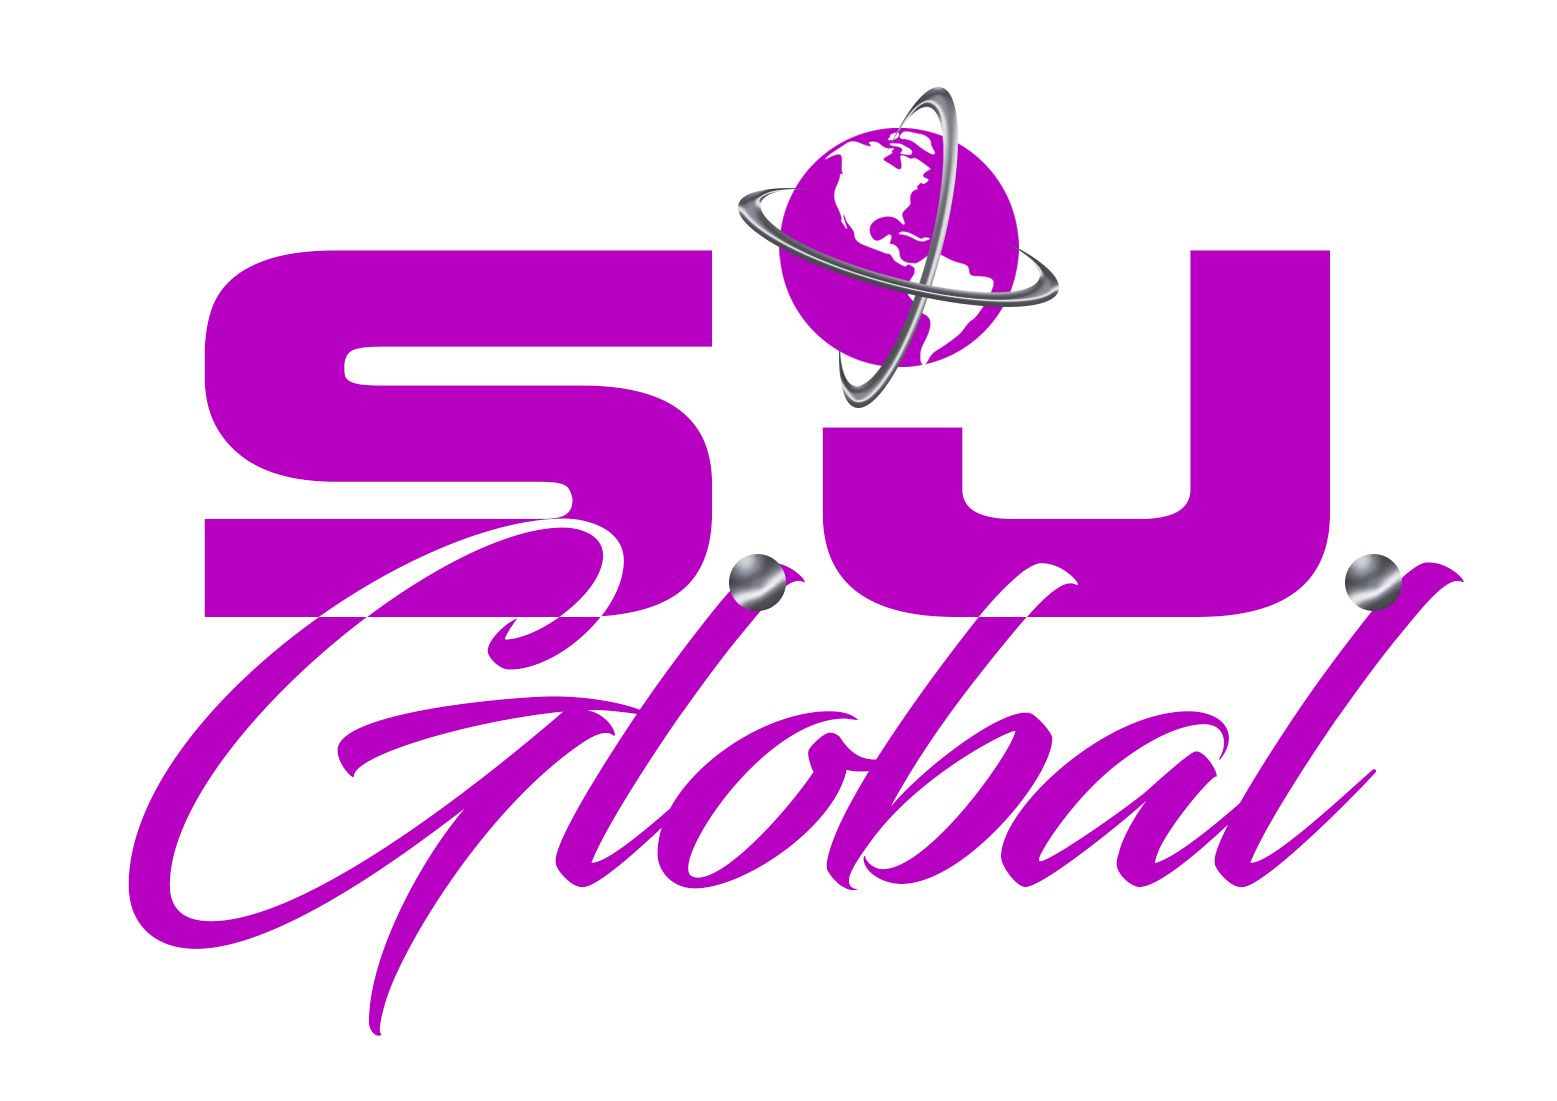 The logo for sj global.